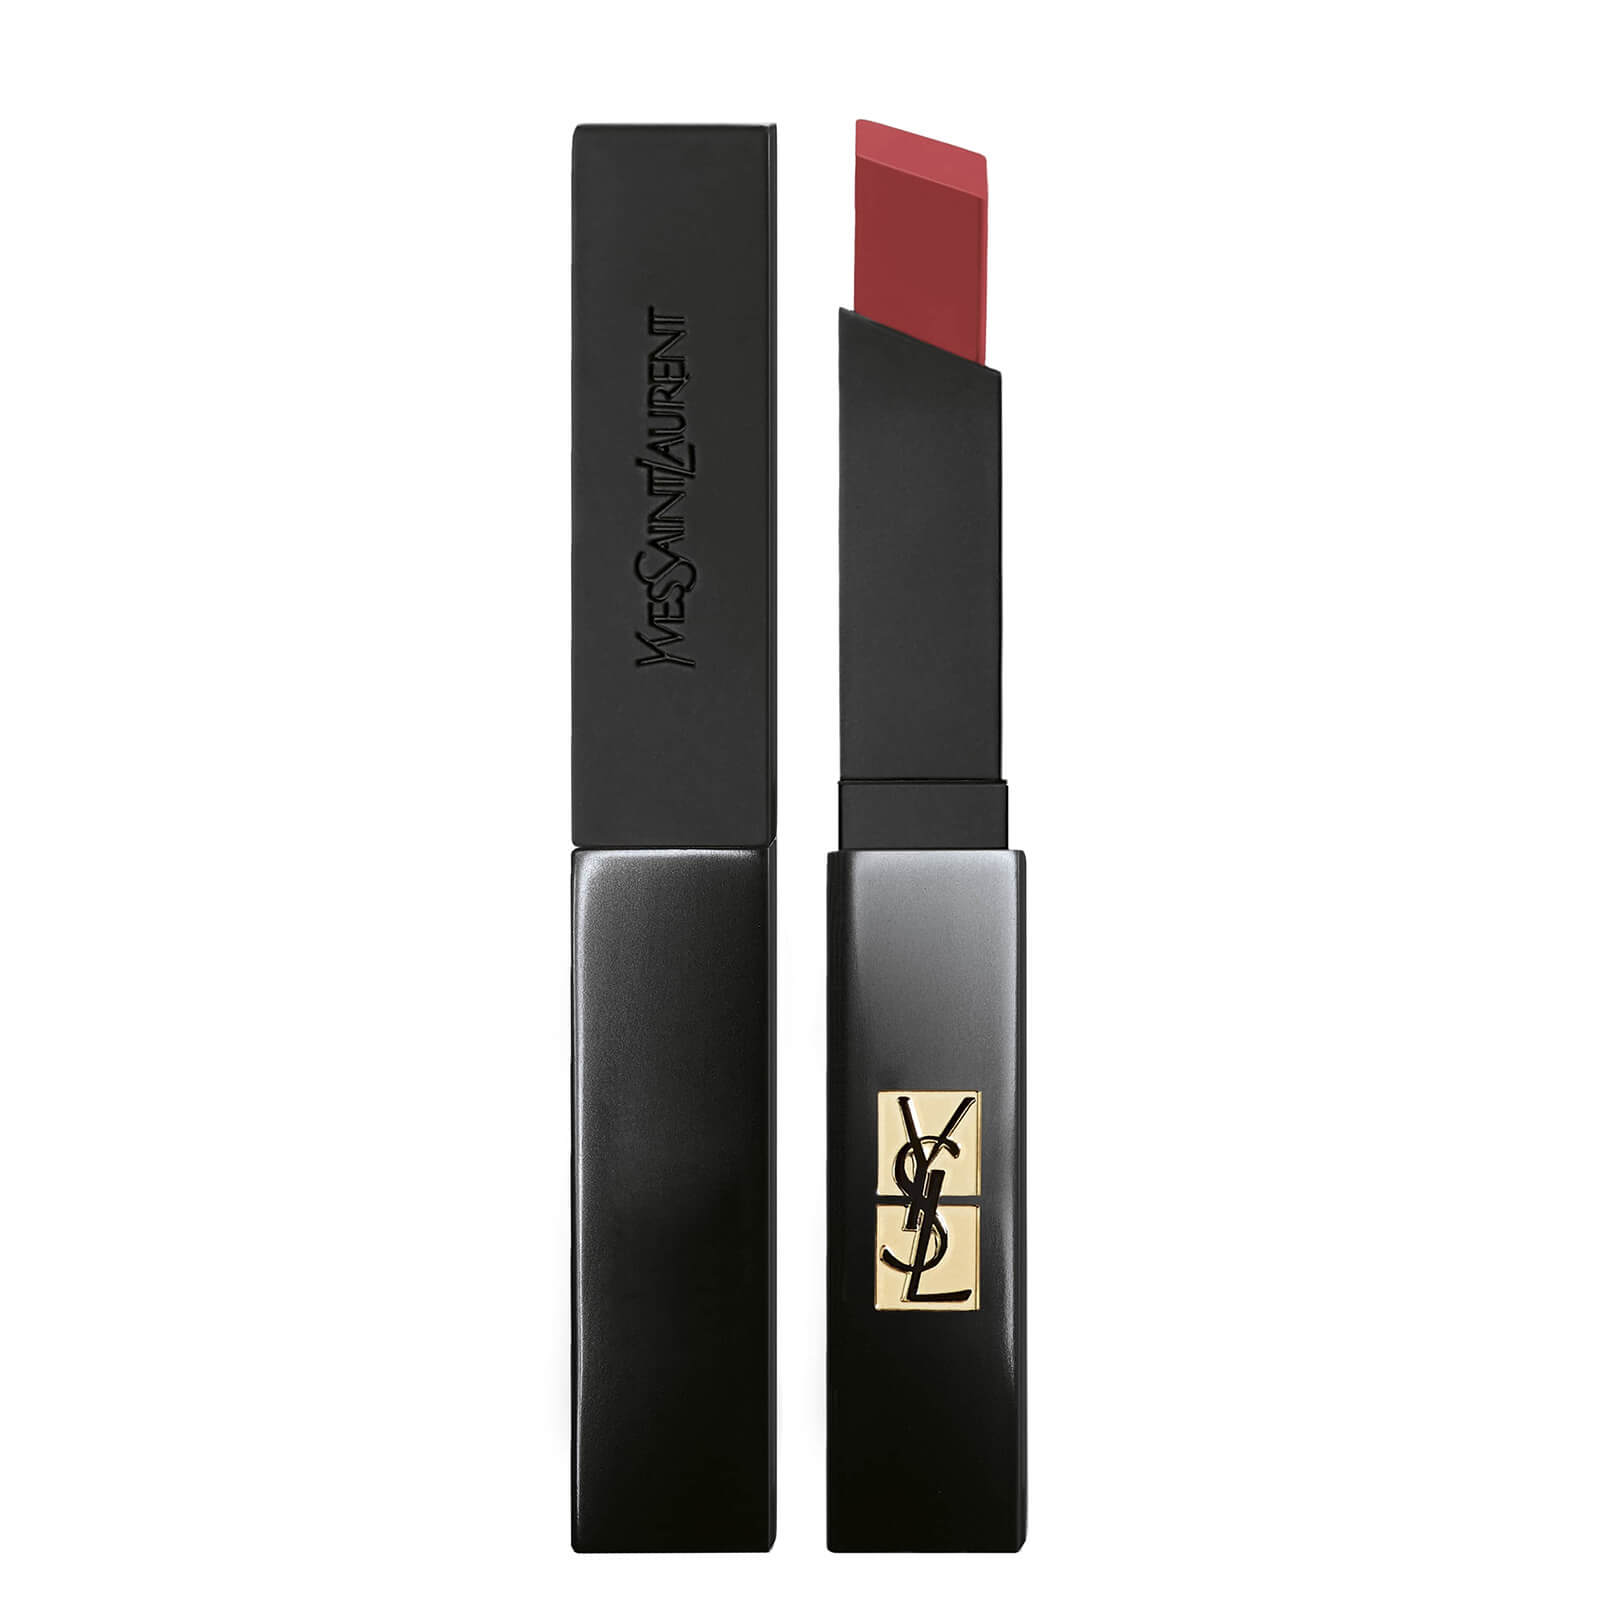 Yves Saint Laurent The Slim Velvet Radical Lipstick 3.8g (Various Shades) - 301 Radical Brown